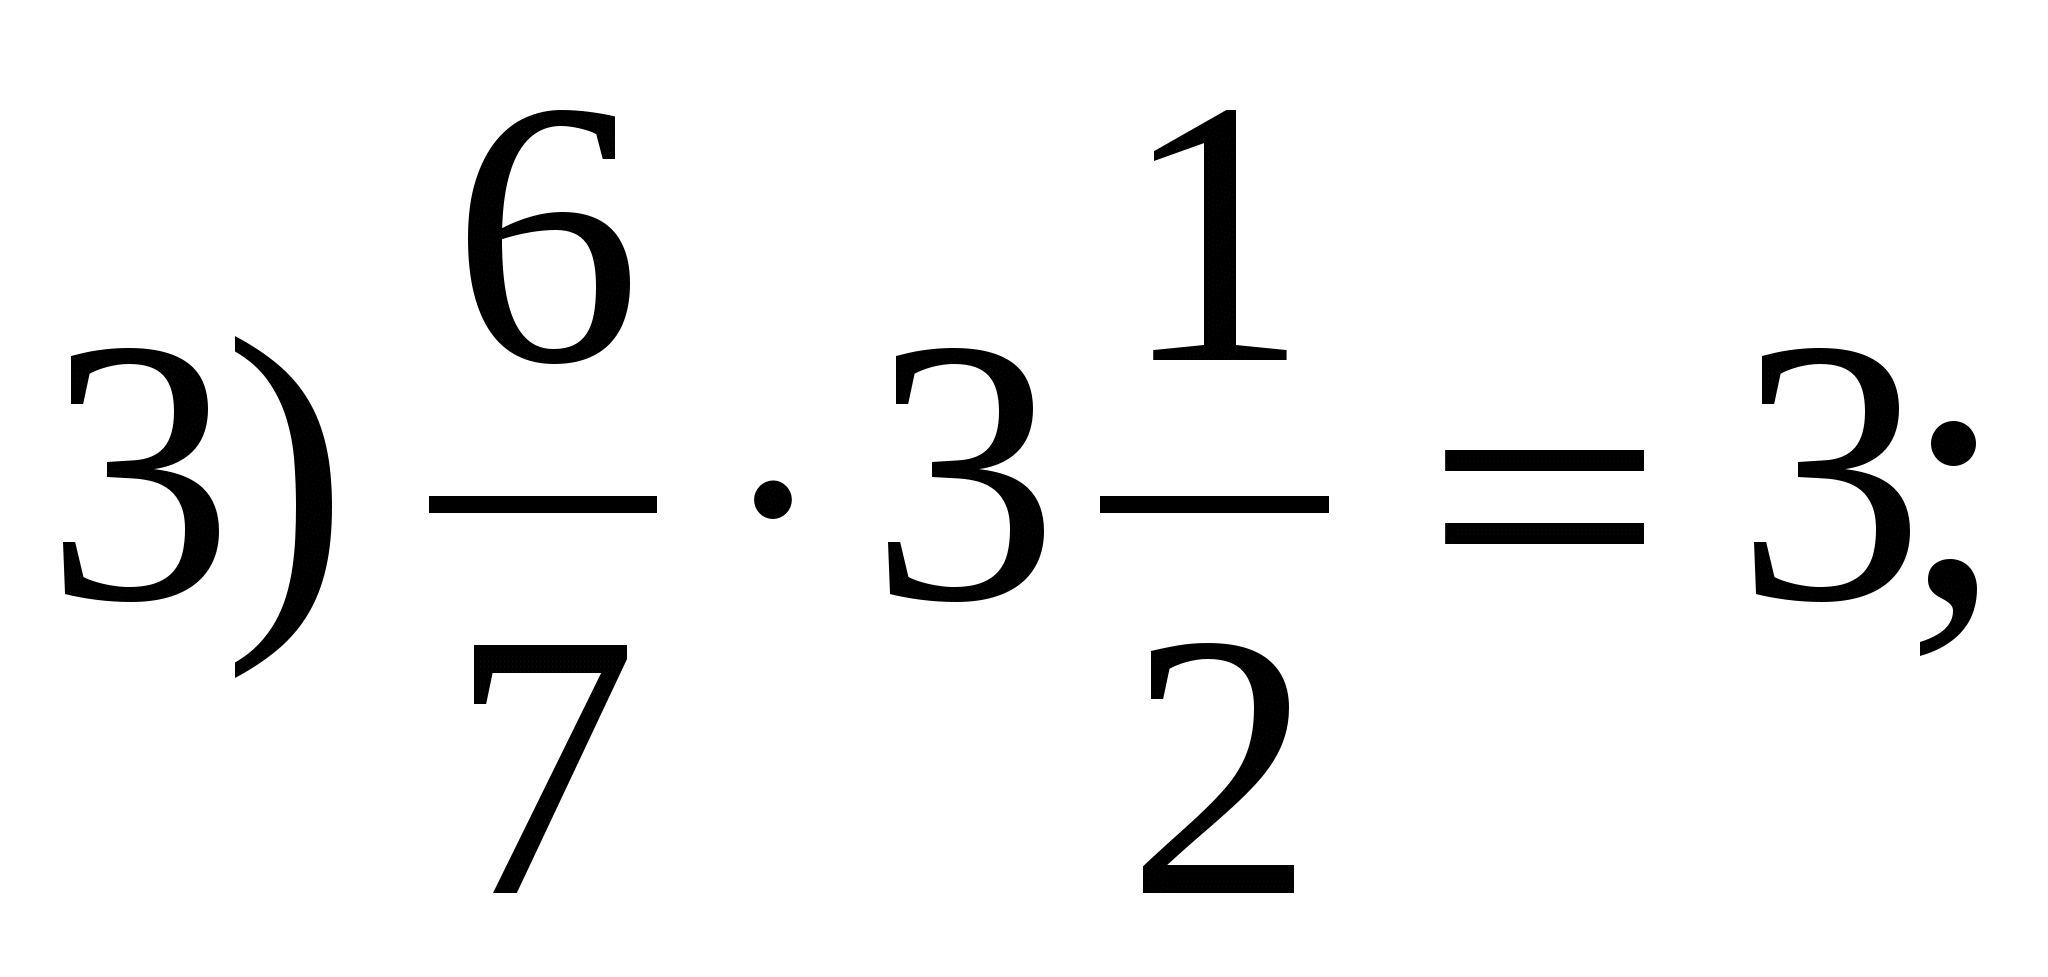 Тест умножение рациональных чисел